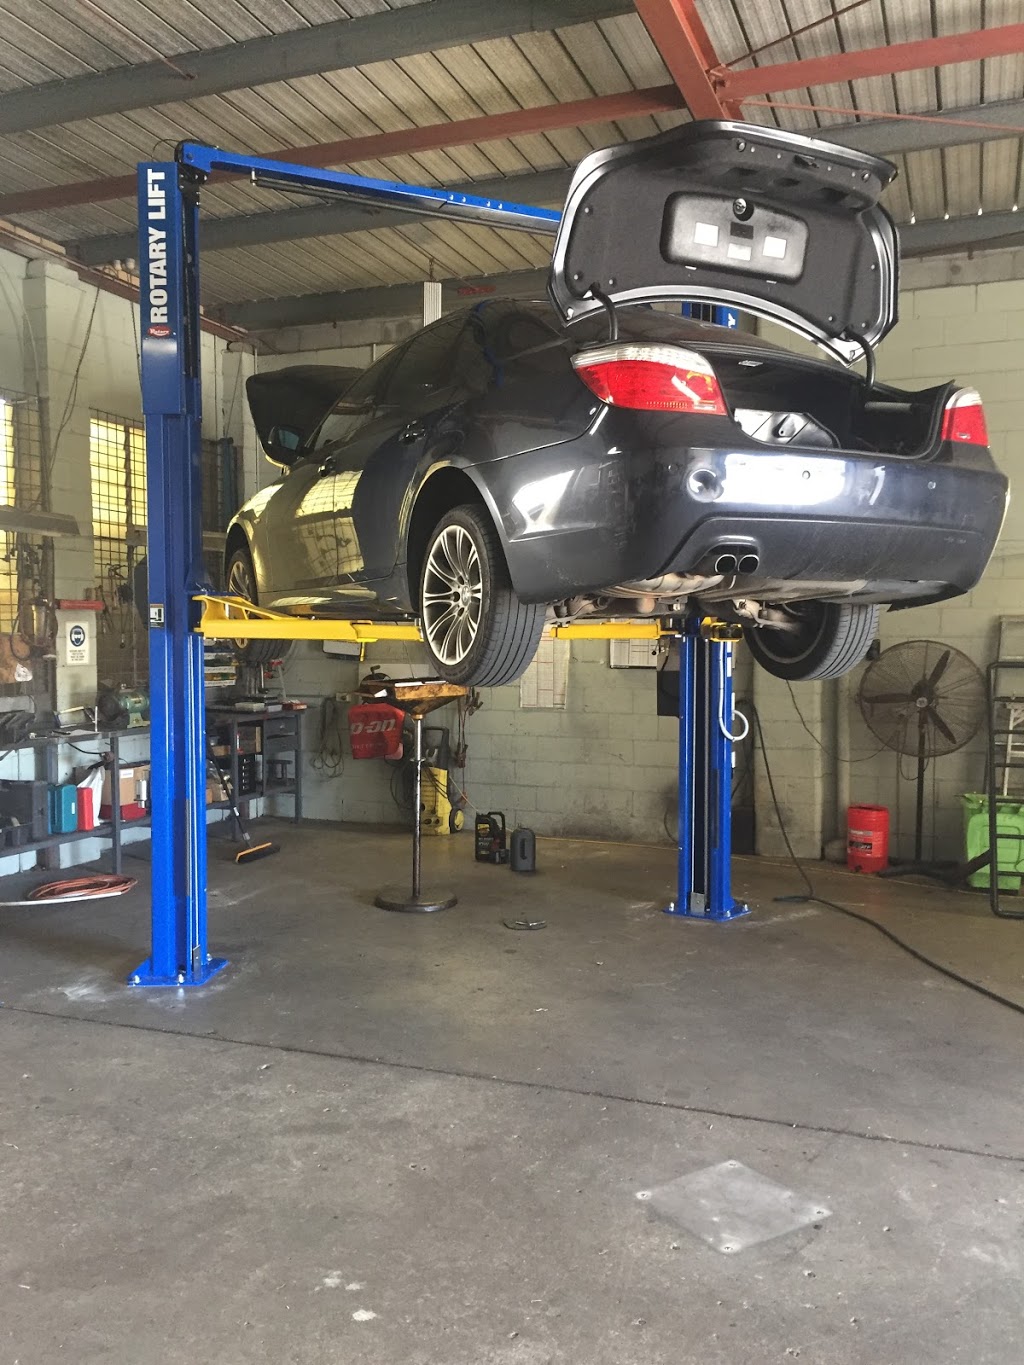 R And K Mechanical Car Care | car repair | 242 Robinson Rd E, Geebung QLD 4034, Australia | 0732651862 OR +61 7 3265 1862